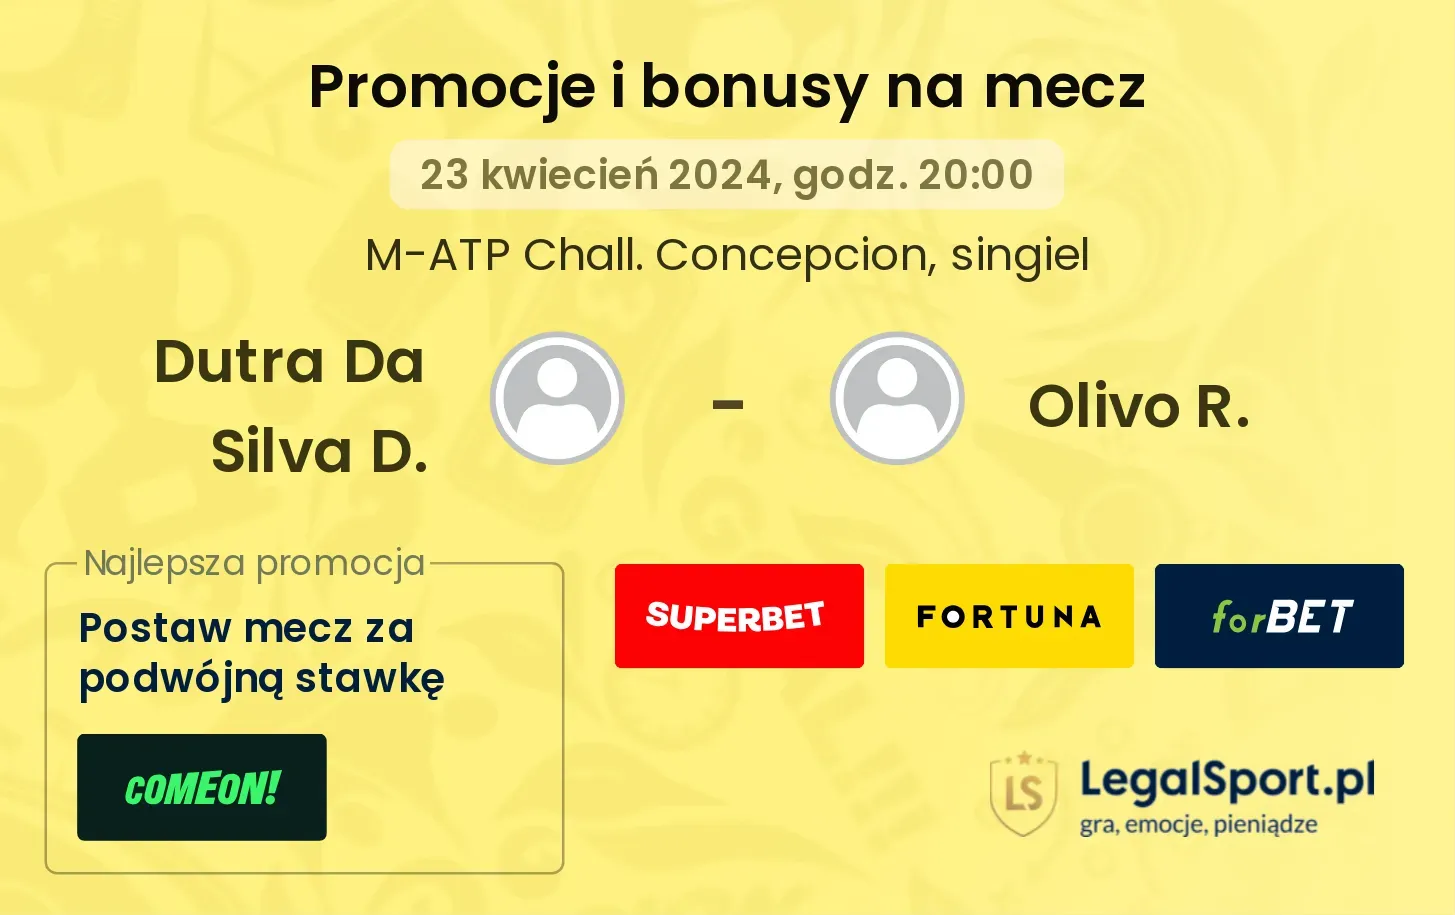 Dutra Da Silva D. - Olivo R. promocje bonusy na mecz